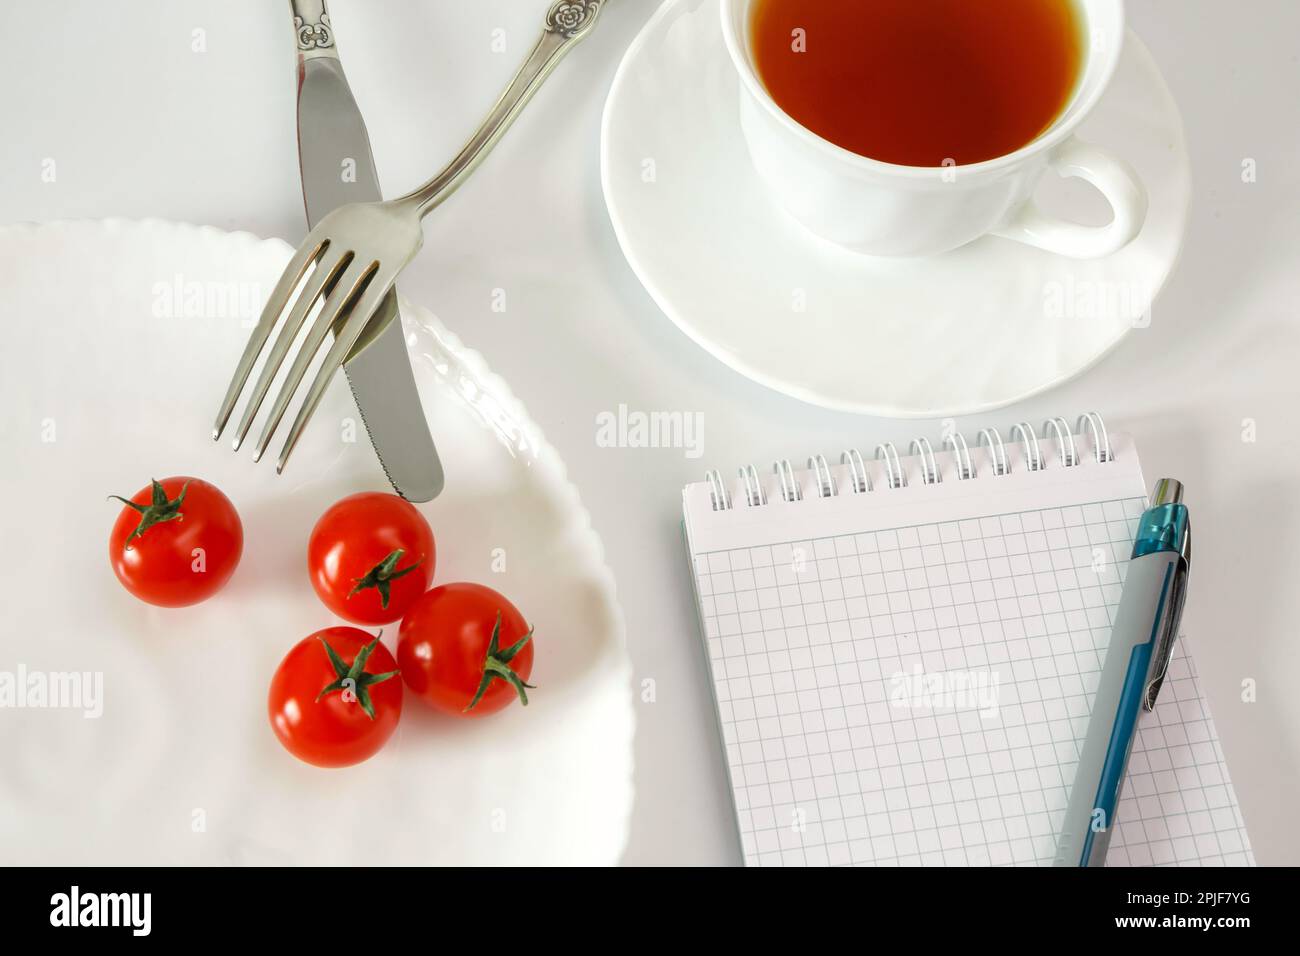 Kirschtomaten auf einem Teller mit Besteck und einer Tasse Tee. Notizbuch zum Aufzeichnen und Zählen von Kalorien für Diätkost Stockfoto